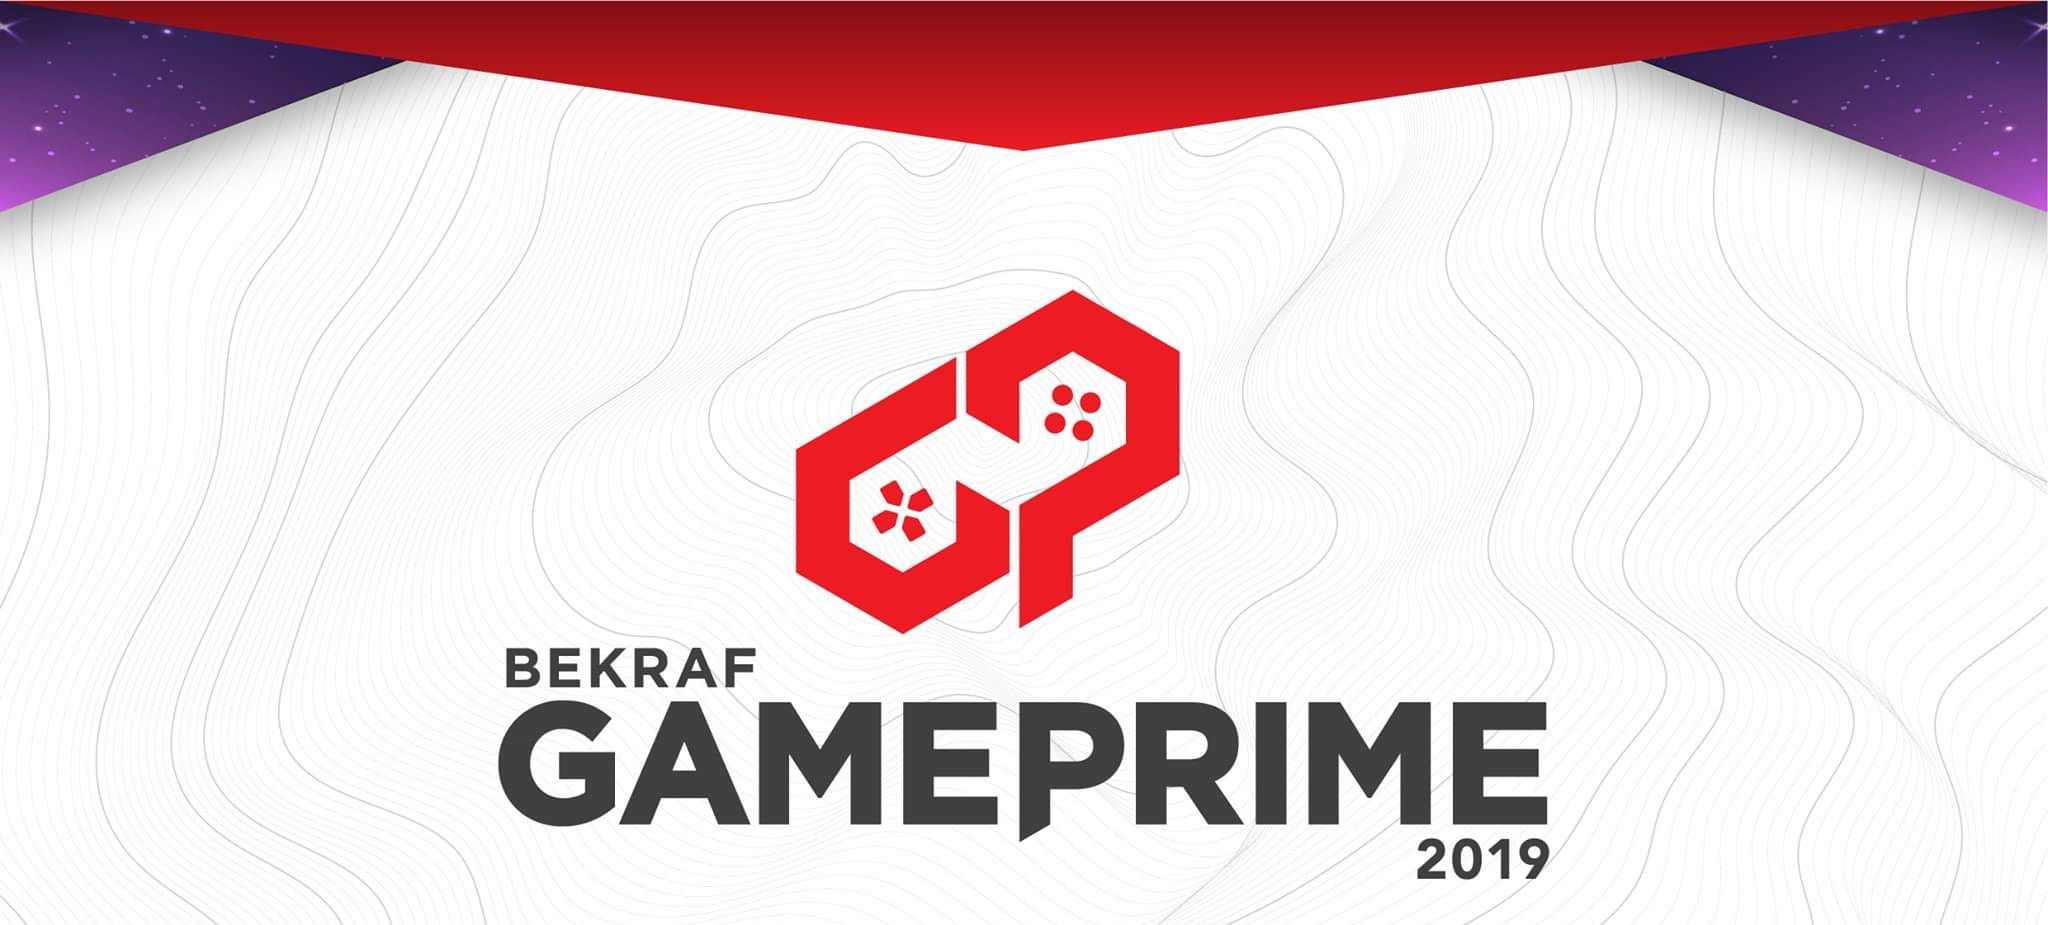 BEKRAF Game Prime 2019